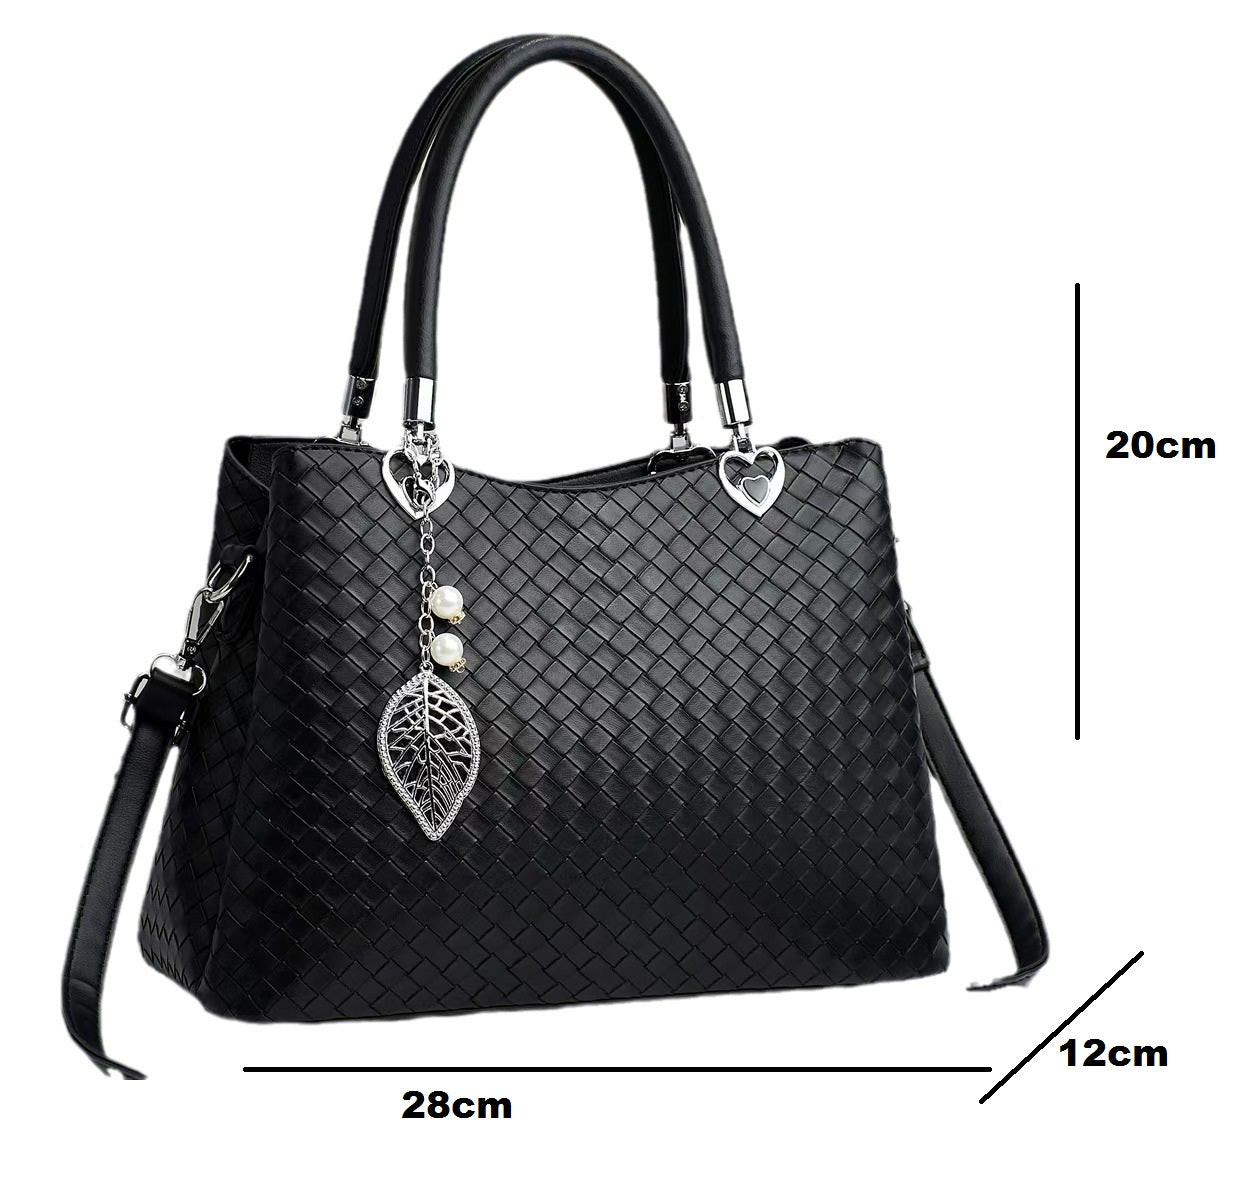 Green Handbag For Girls H6690-8